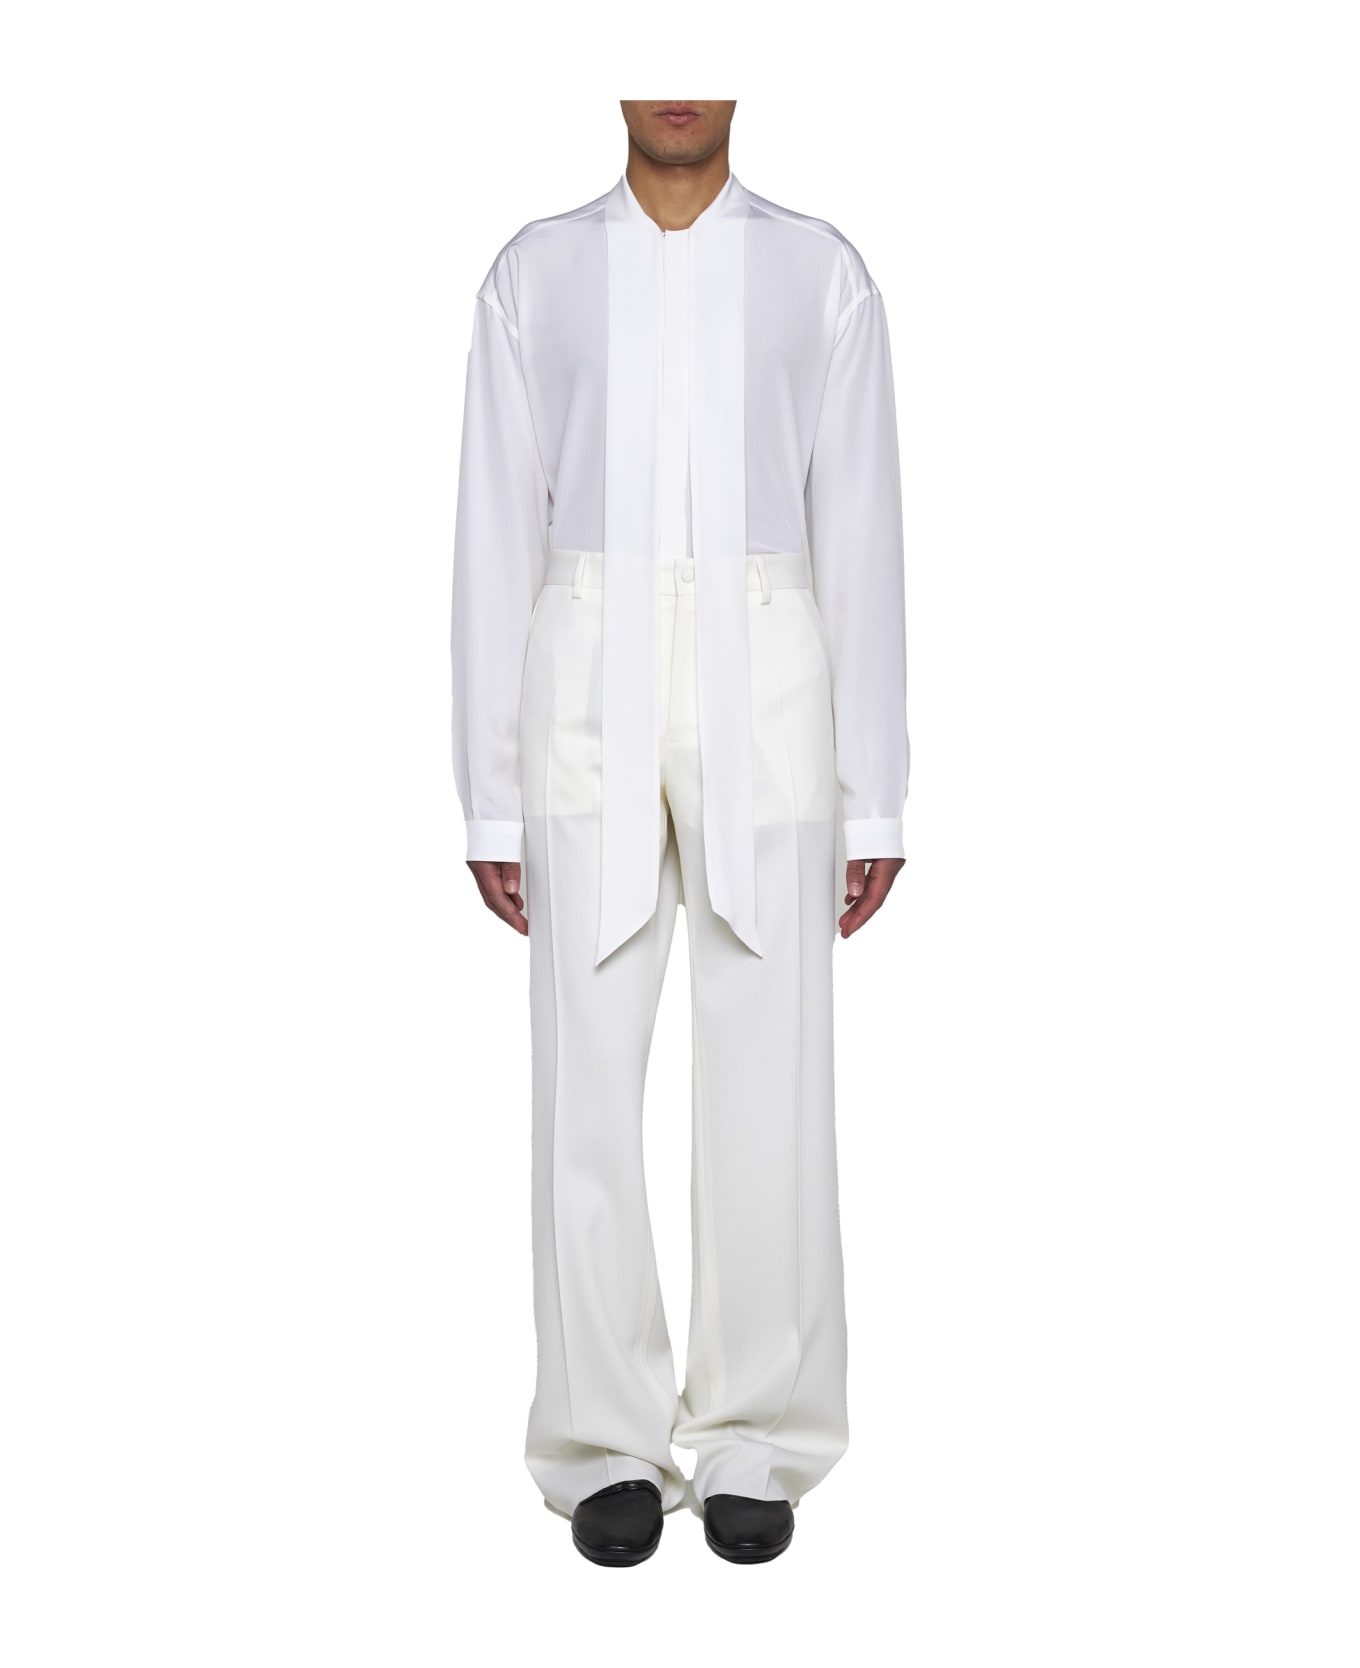 Dolce & Gabbana Scarf Detailed Shirt - Bianco otticco